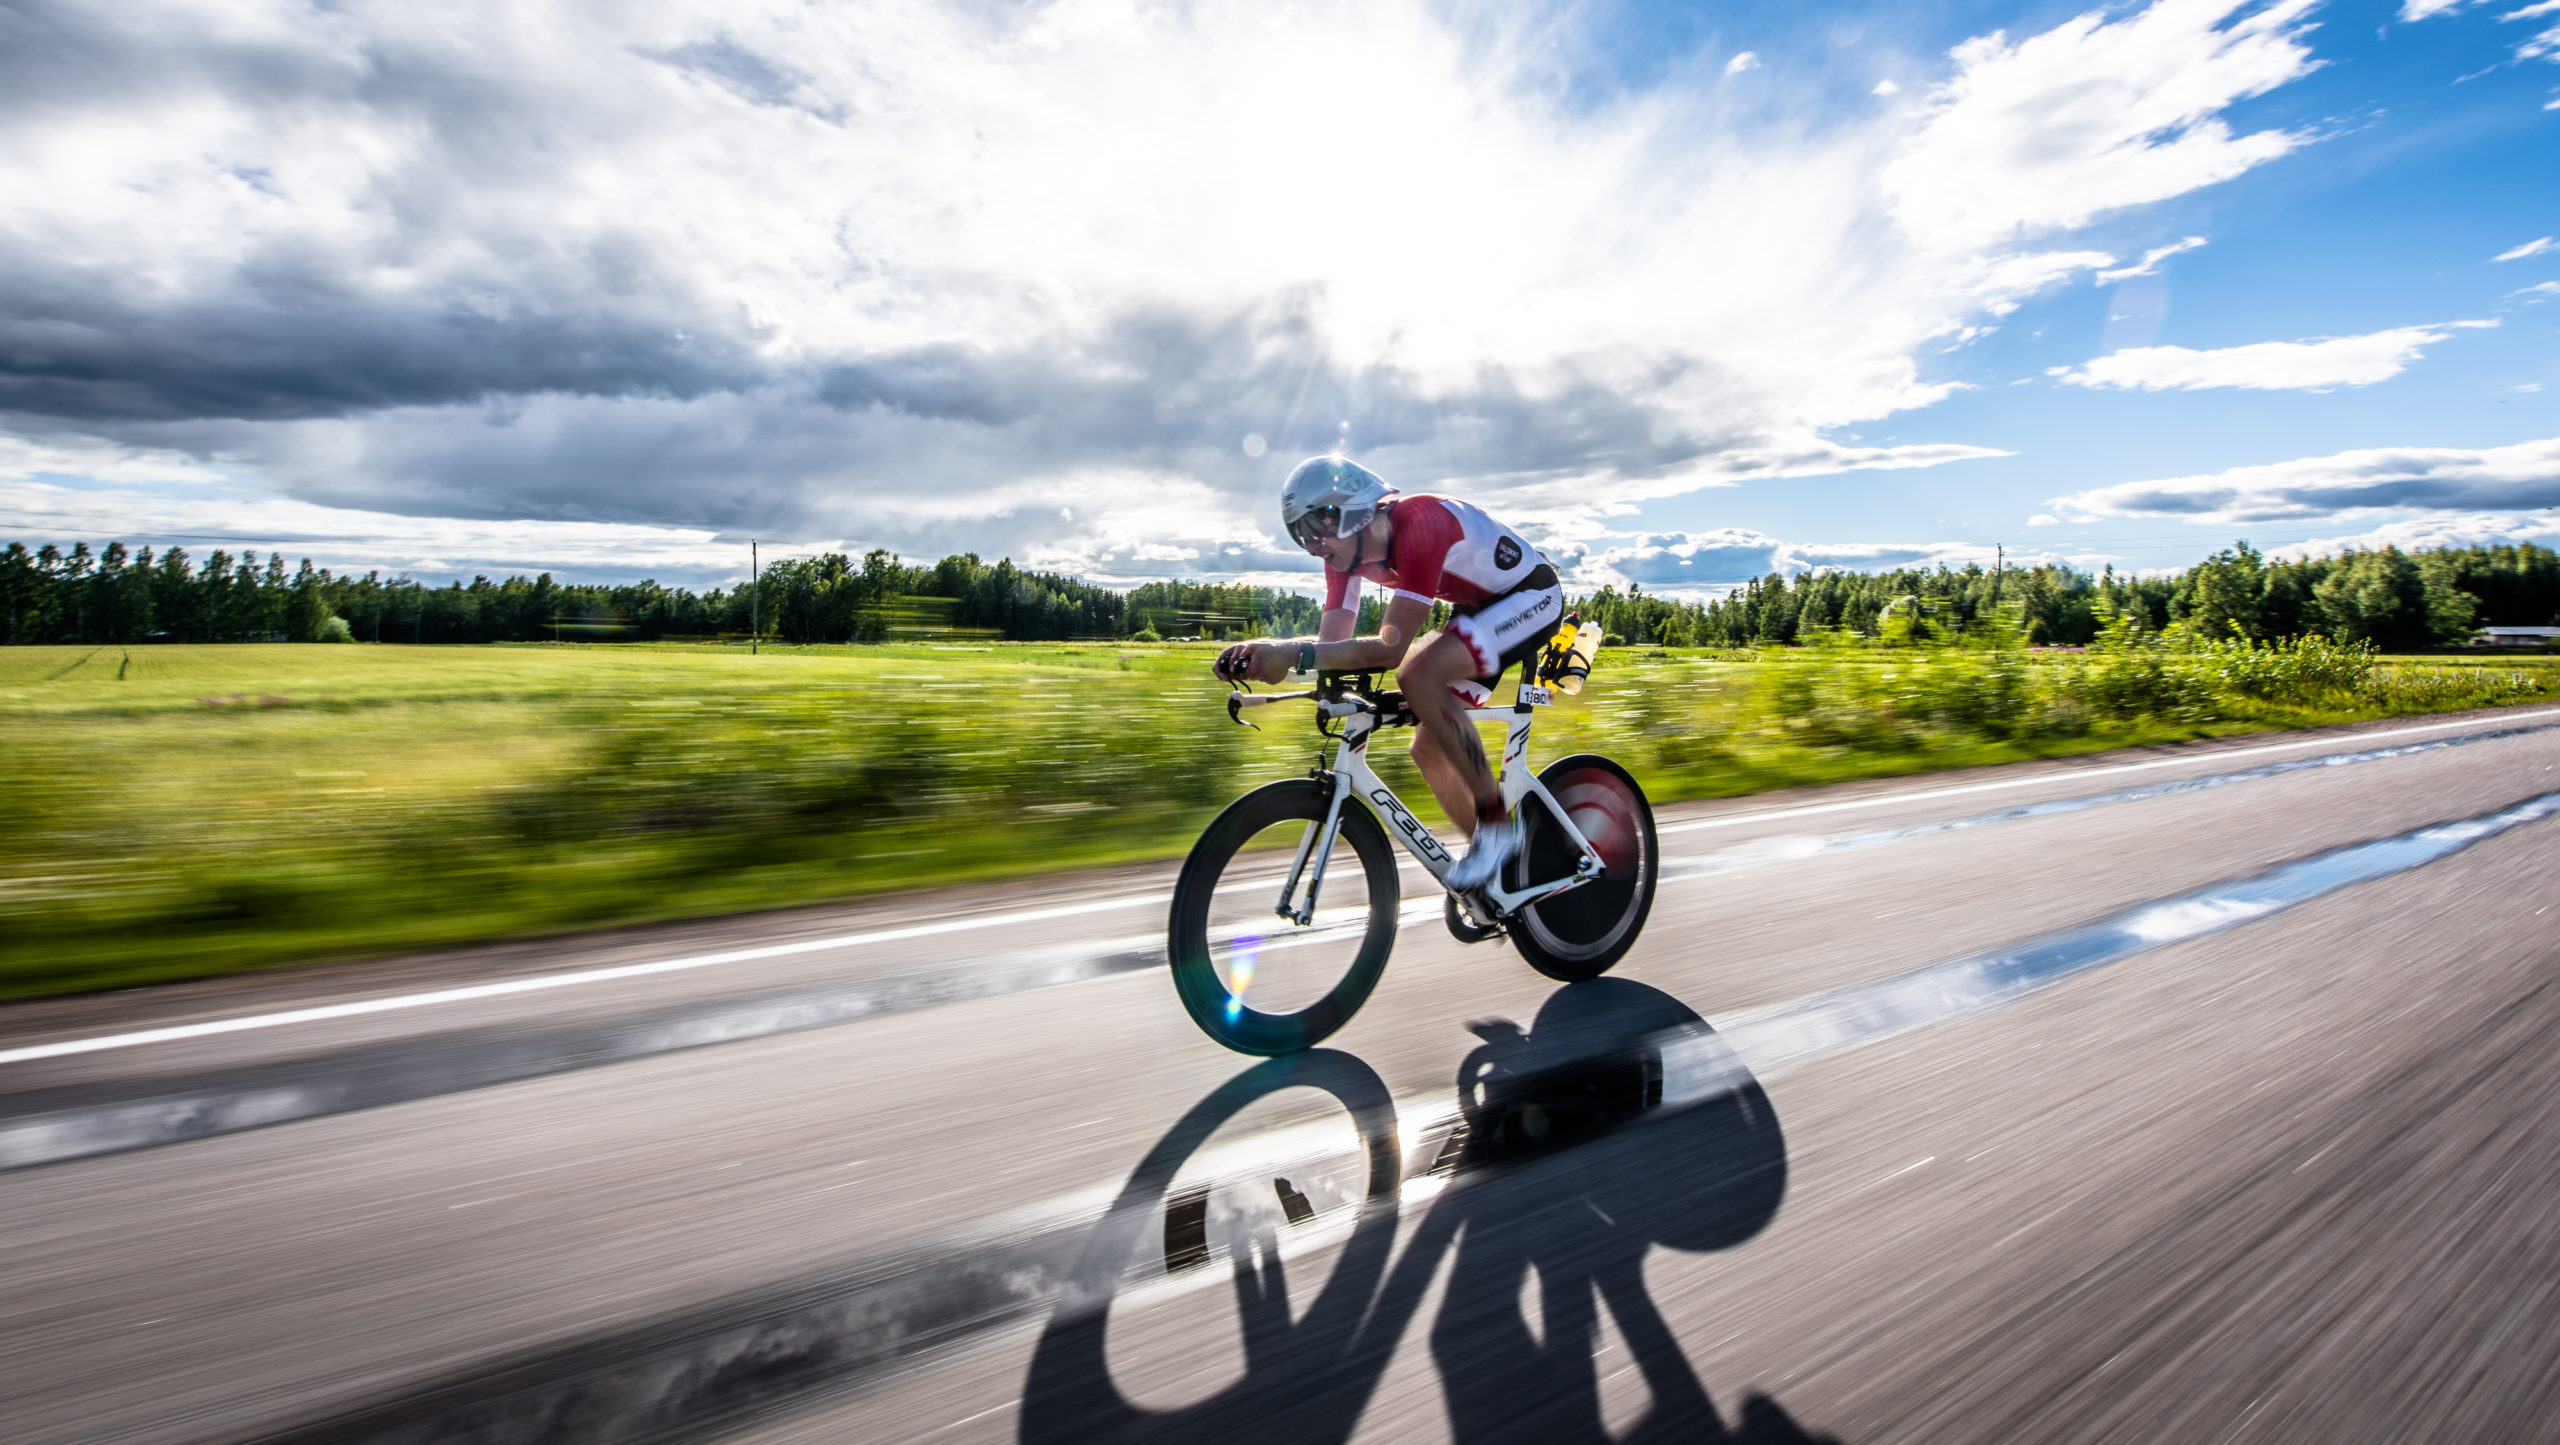 Ironman kilpailu kesällä. Yksi kilpailija ajaa kilpapyörällä maantiellä. Aurinko paistaa pilvien läpi. Taustalla viheralue ja lehtimetsä.